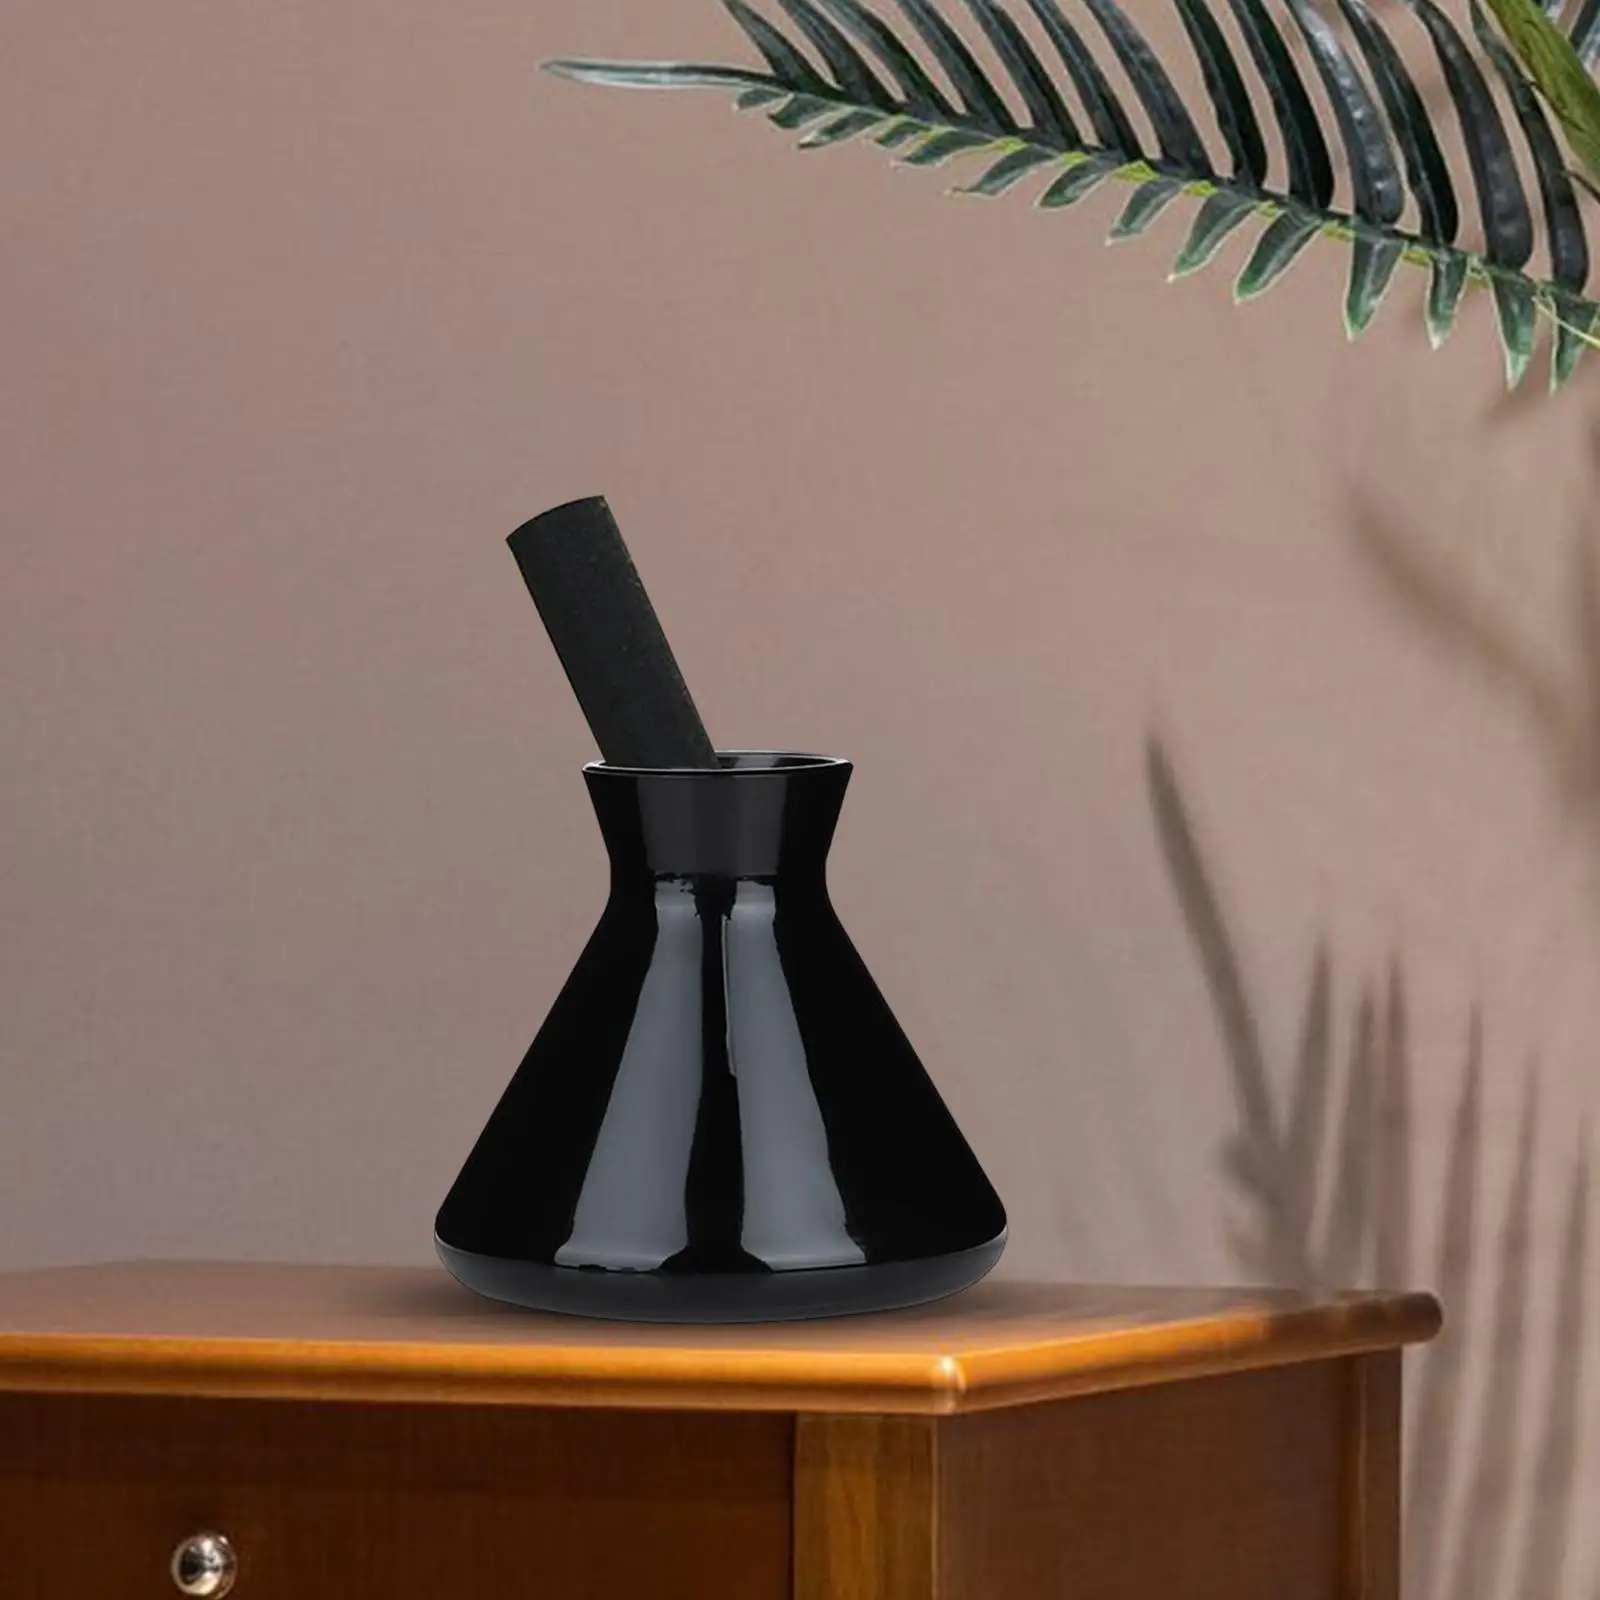 Empty Bud Vases Essential Oil Container Decorative Vase, Mini Vase Dispenser for